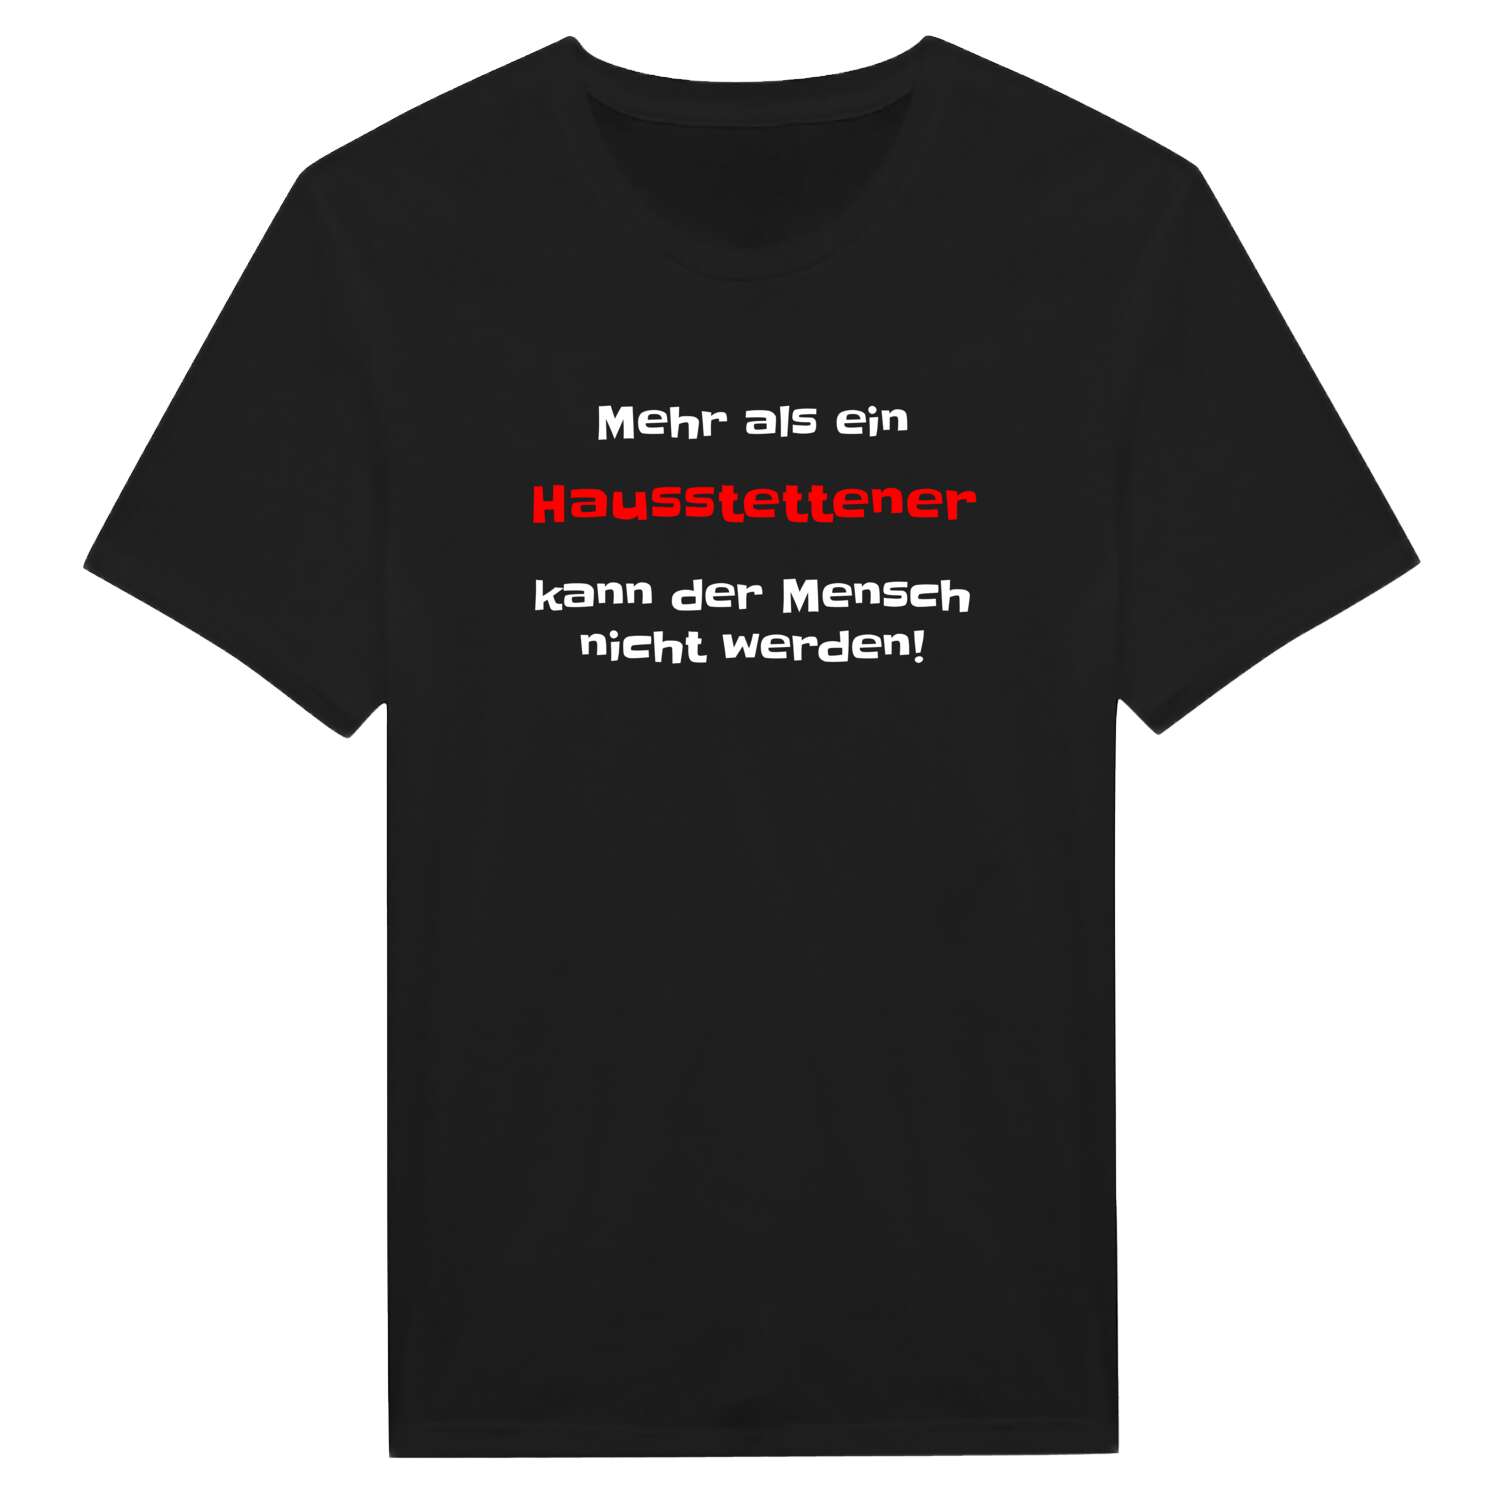 Hausstette T-Shirt »Mehr als ein«